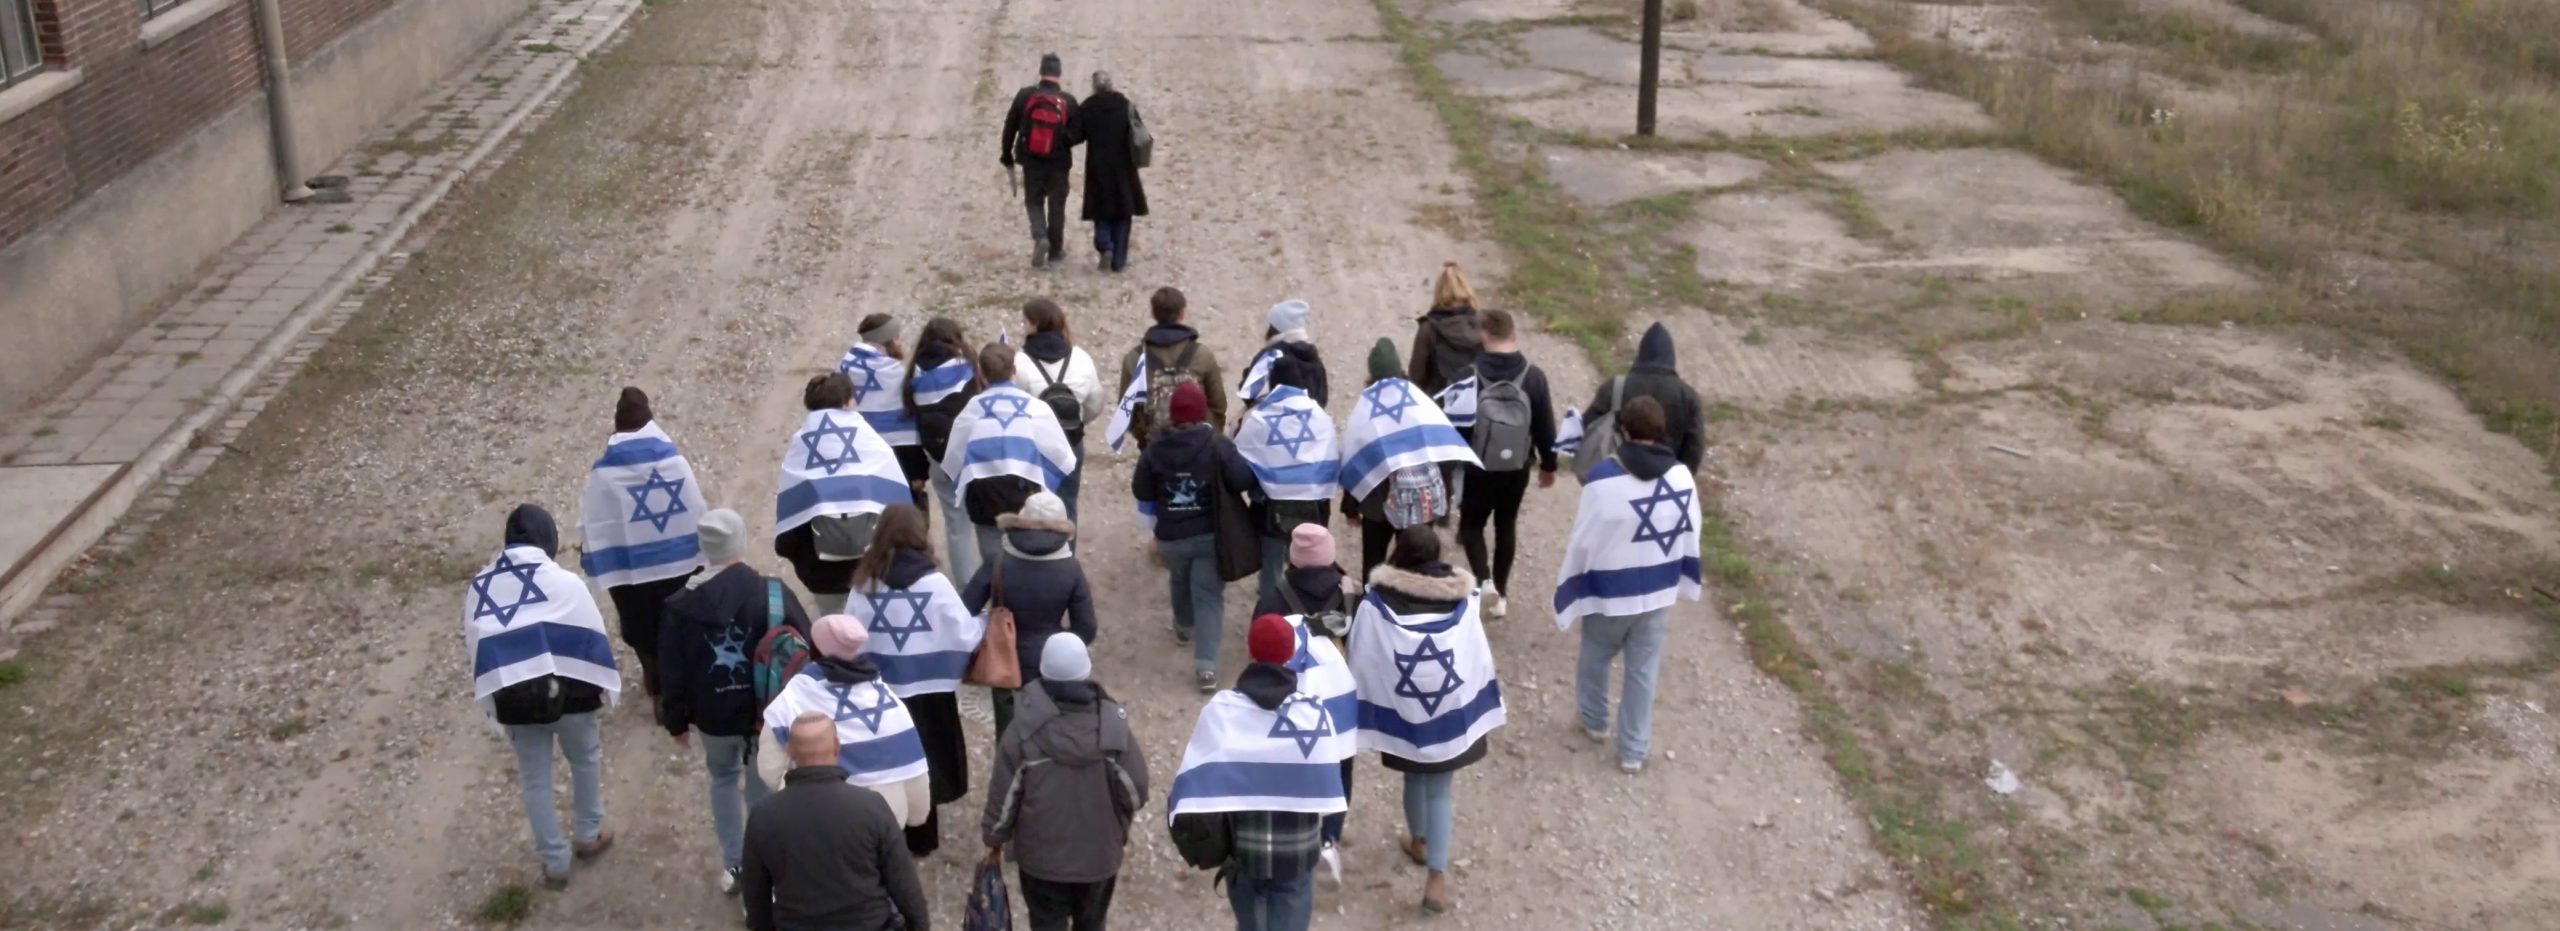 קבוצת נערים עטופים בדגלי ישראל צועדים על שבילים ומולם הולכים המדריך והניצולה